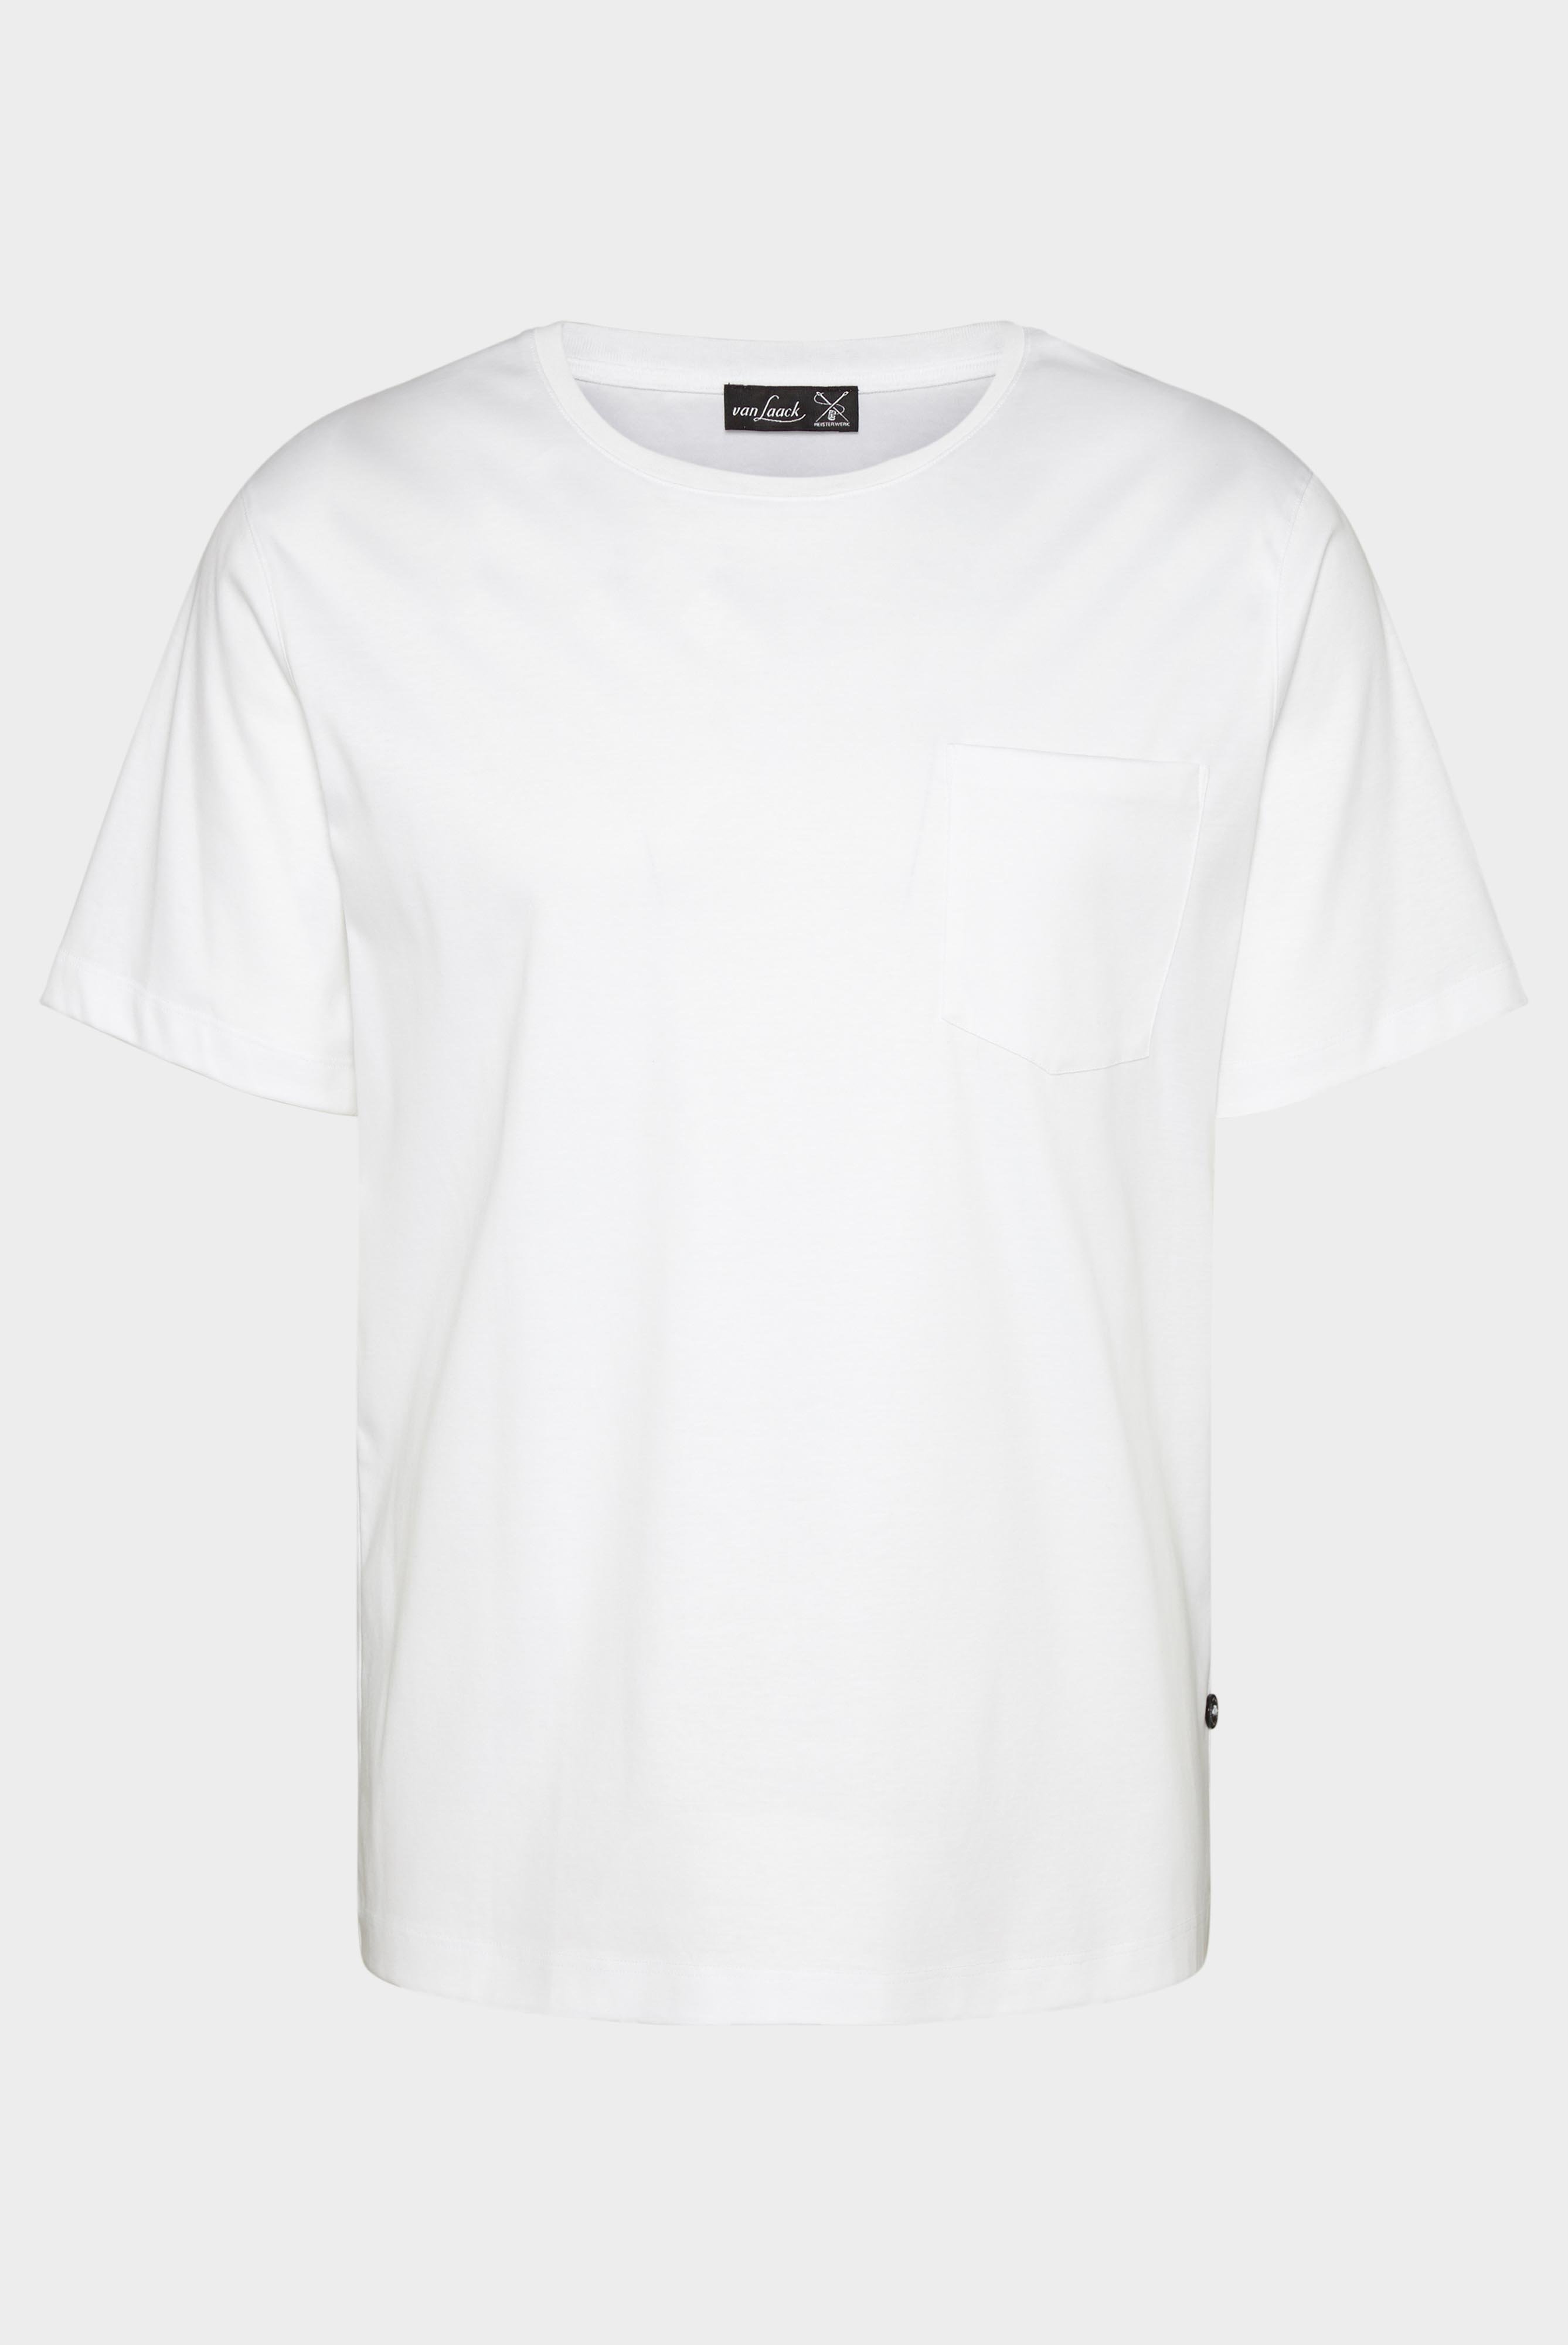 T-Shirts+Oversize Jersey T-Shirt mit Brusttasche+20.1776.GZ.180031.000.S